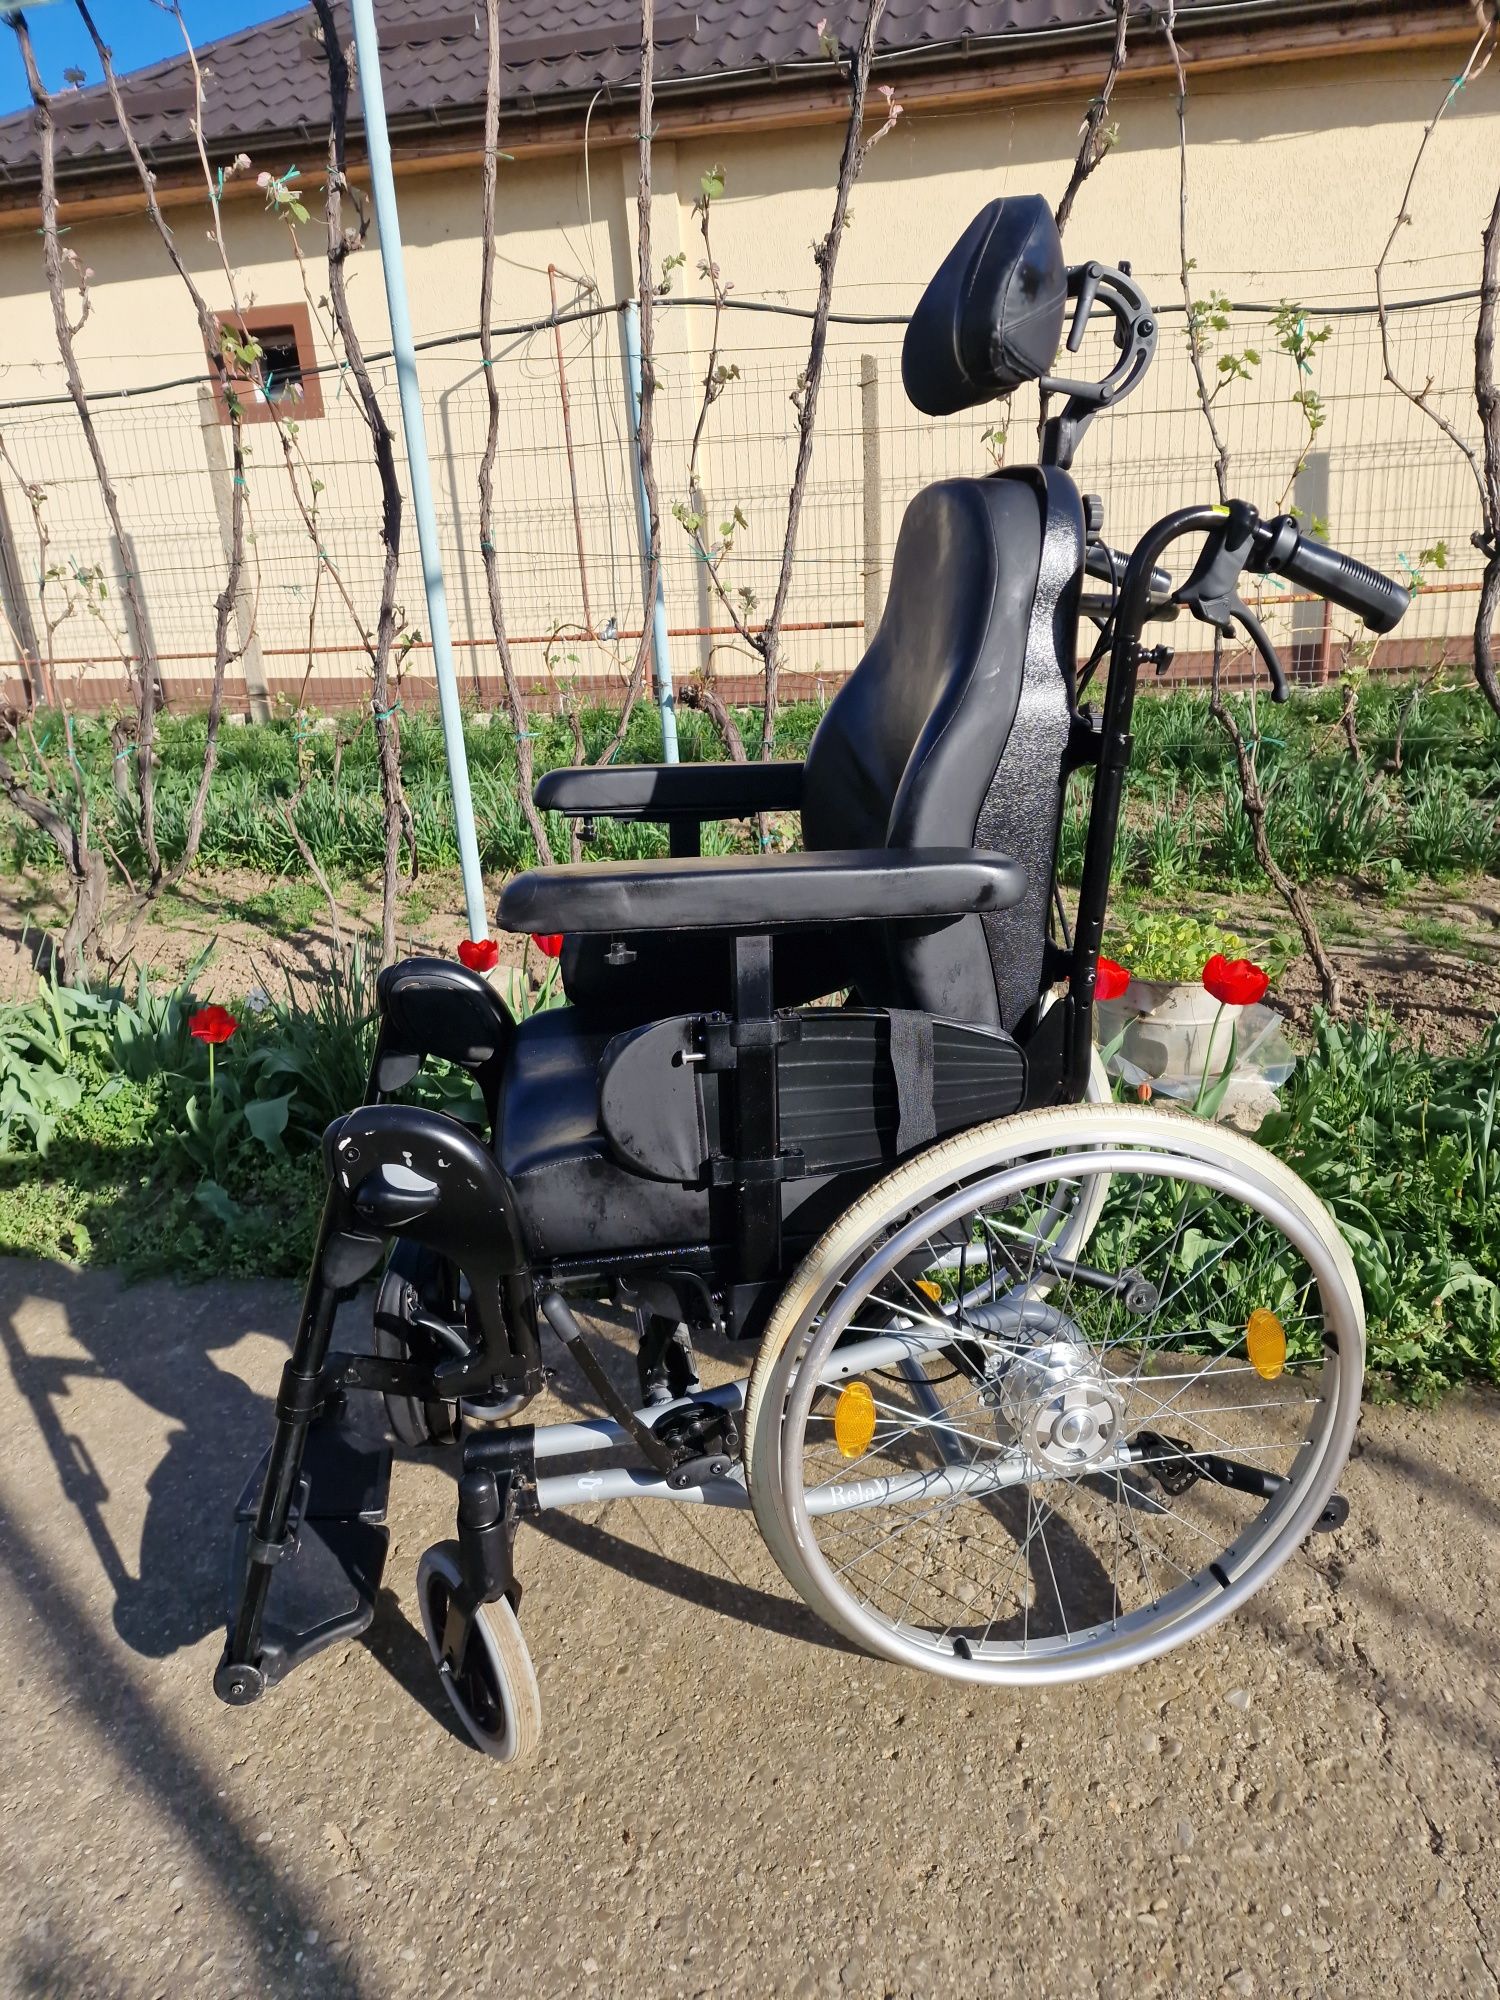 Carucior/carut manual BREEZY Relax 2 pers cu handicap, scaun
dizabilit